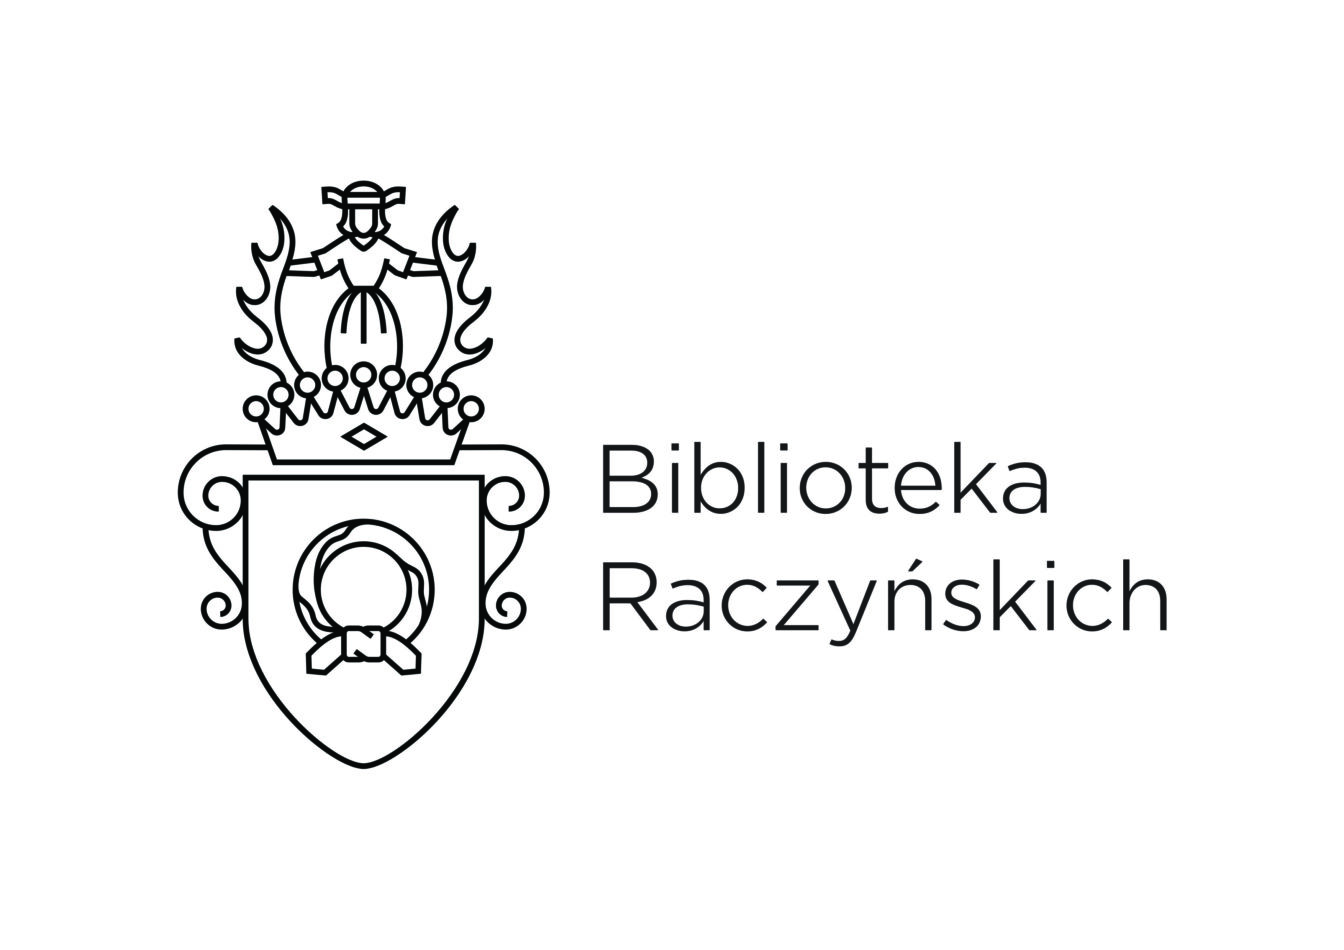 Logotyp Biblioteki Raczyńskich, grafika wywiedziona z historycznego herbu Nałęcz oraz nazwa Biblioteka Raczyńskich na białym tle